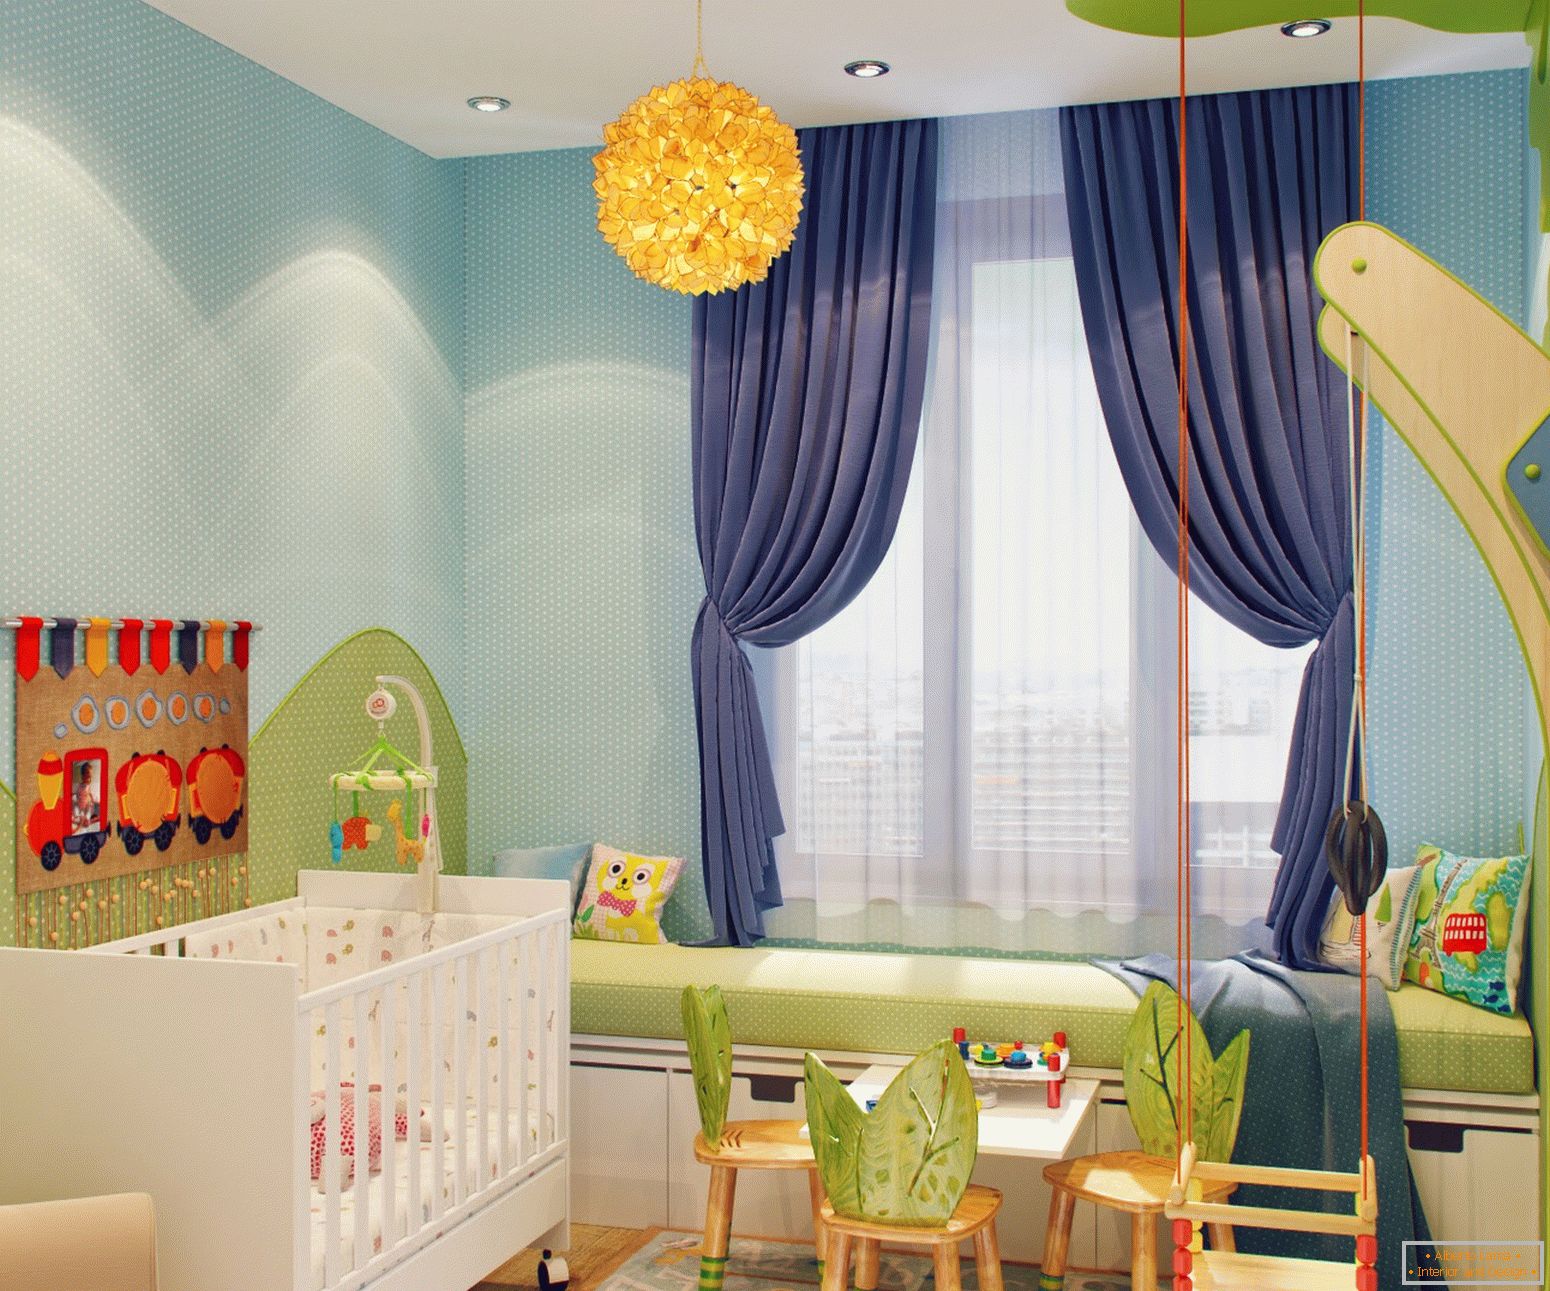 Krásny dizajn malej detskej izby